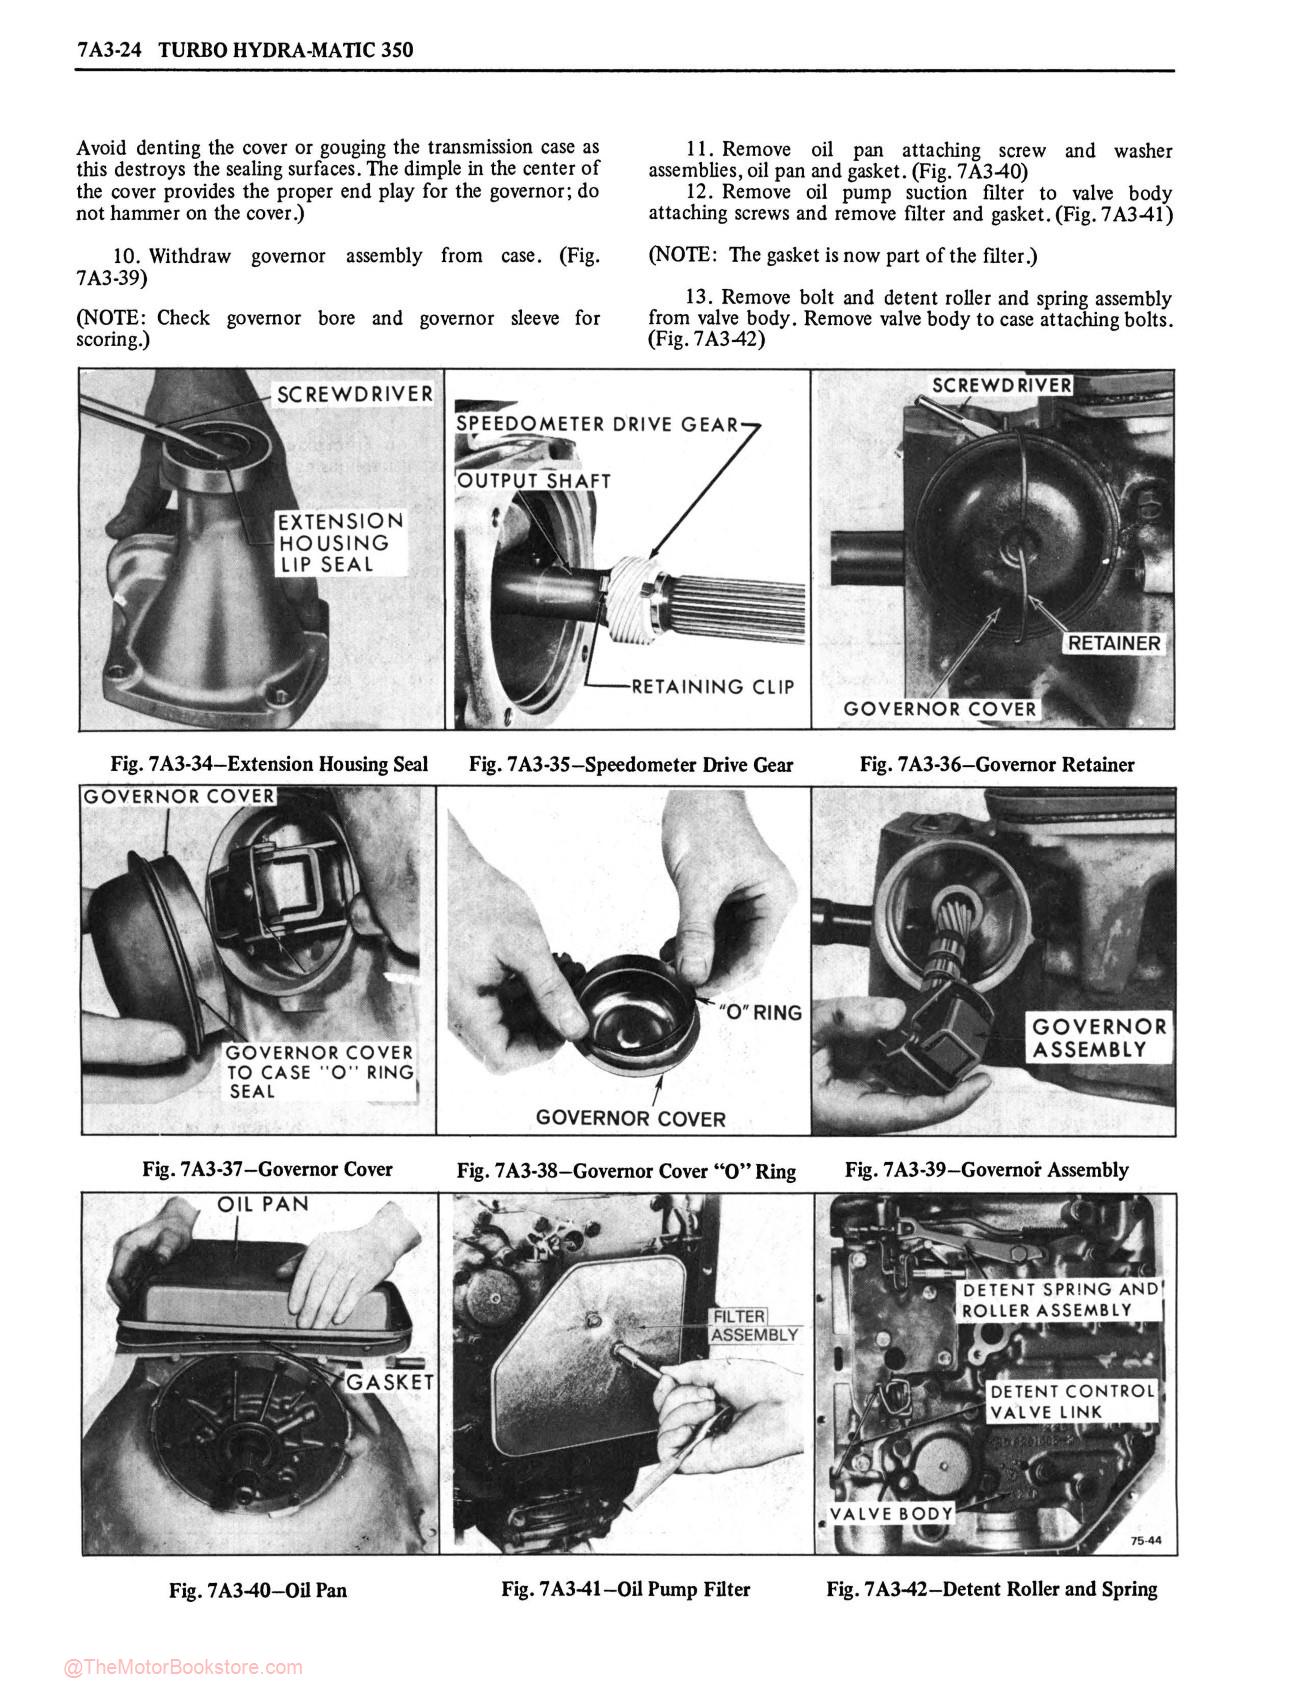 1978 Oldsmobile Service Repair Manual - Sample Page 2